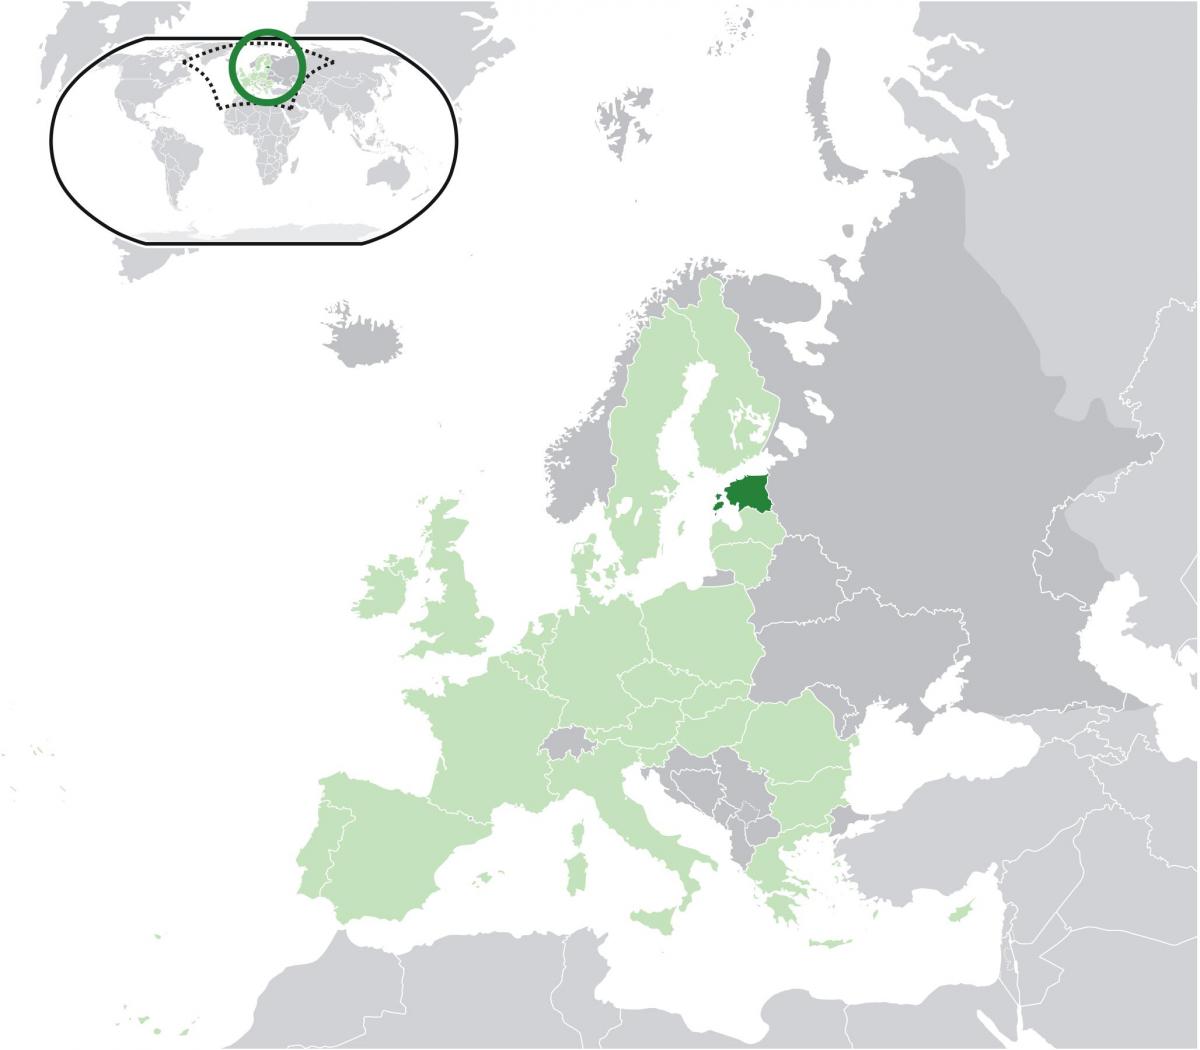 Estland på kort over europa